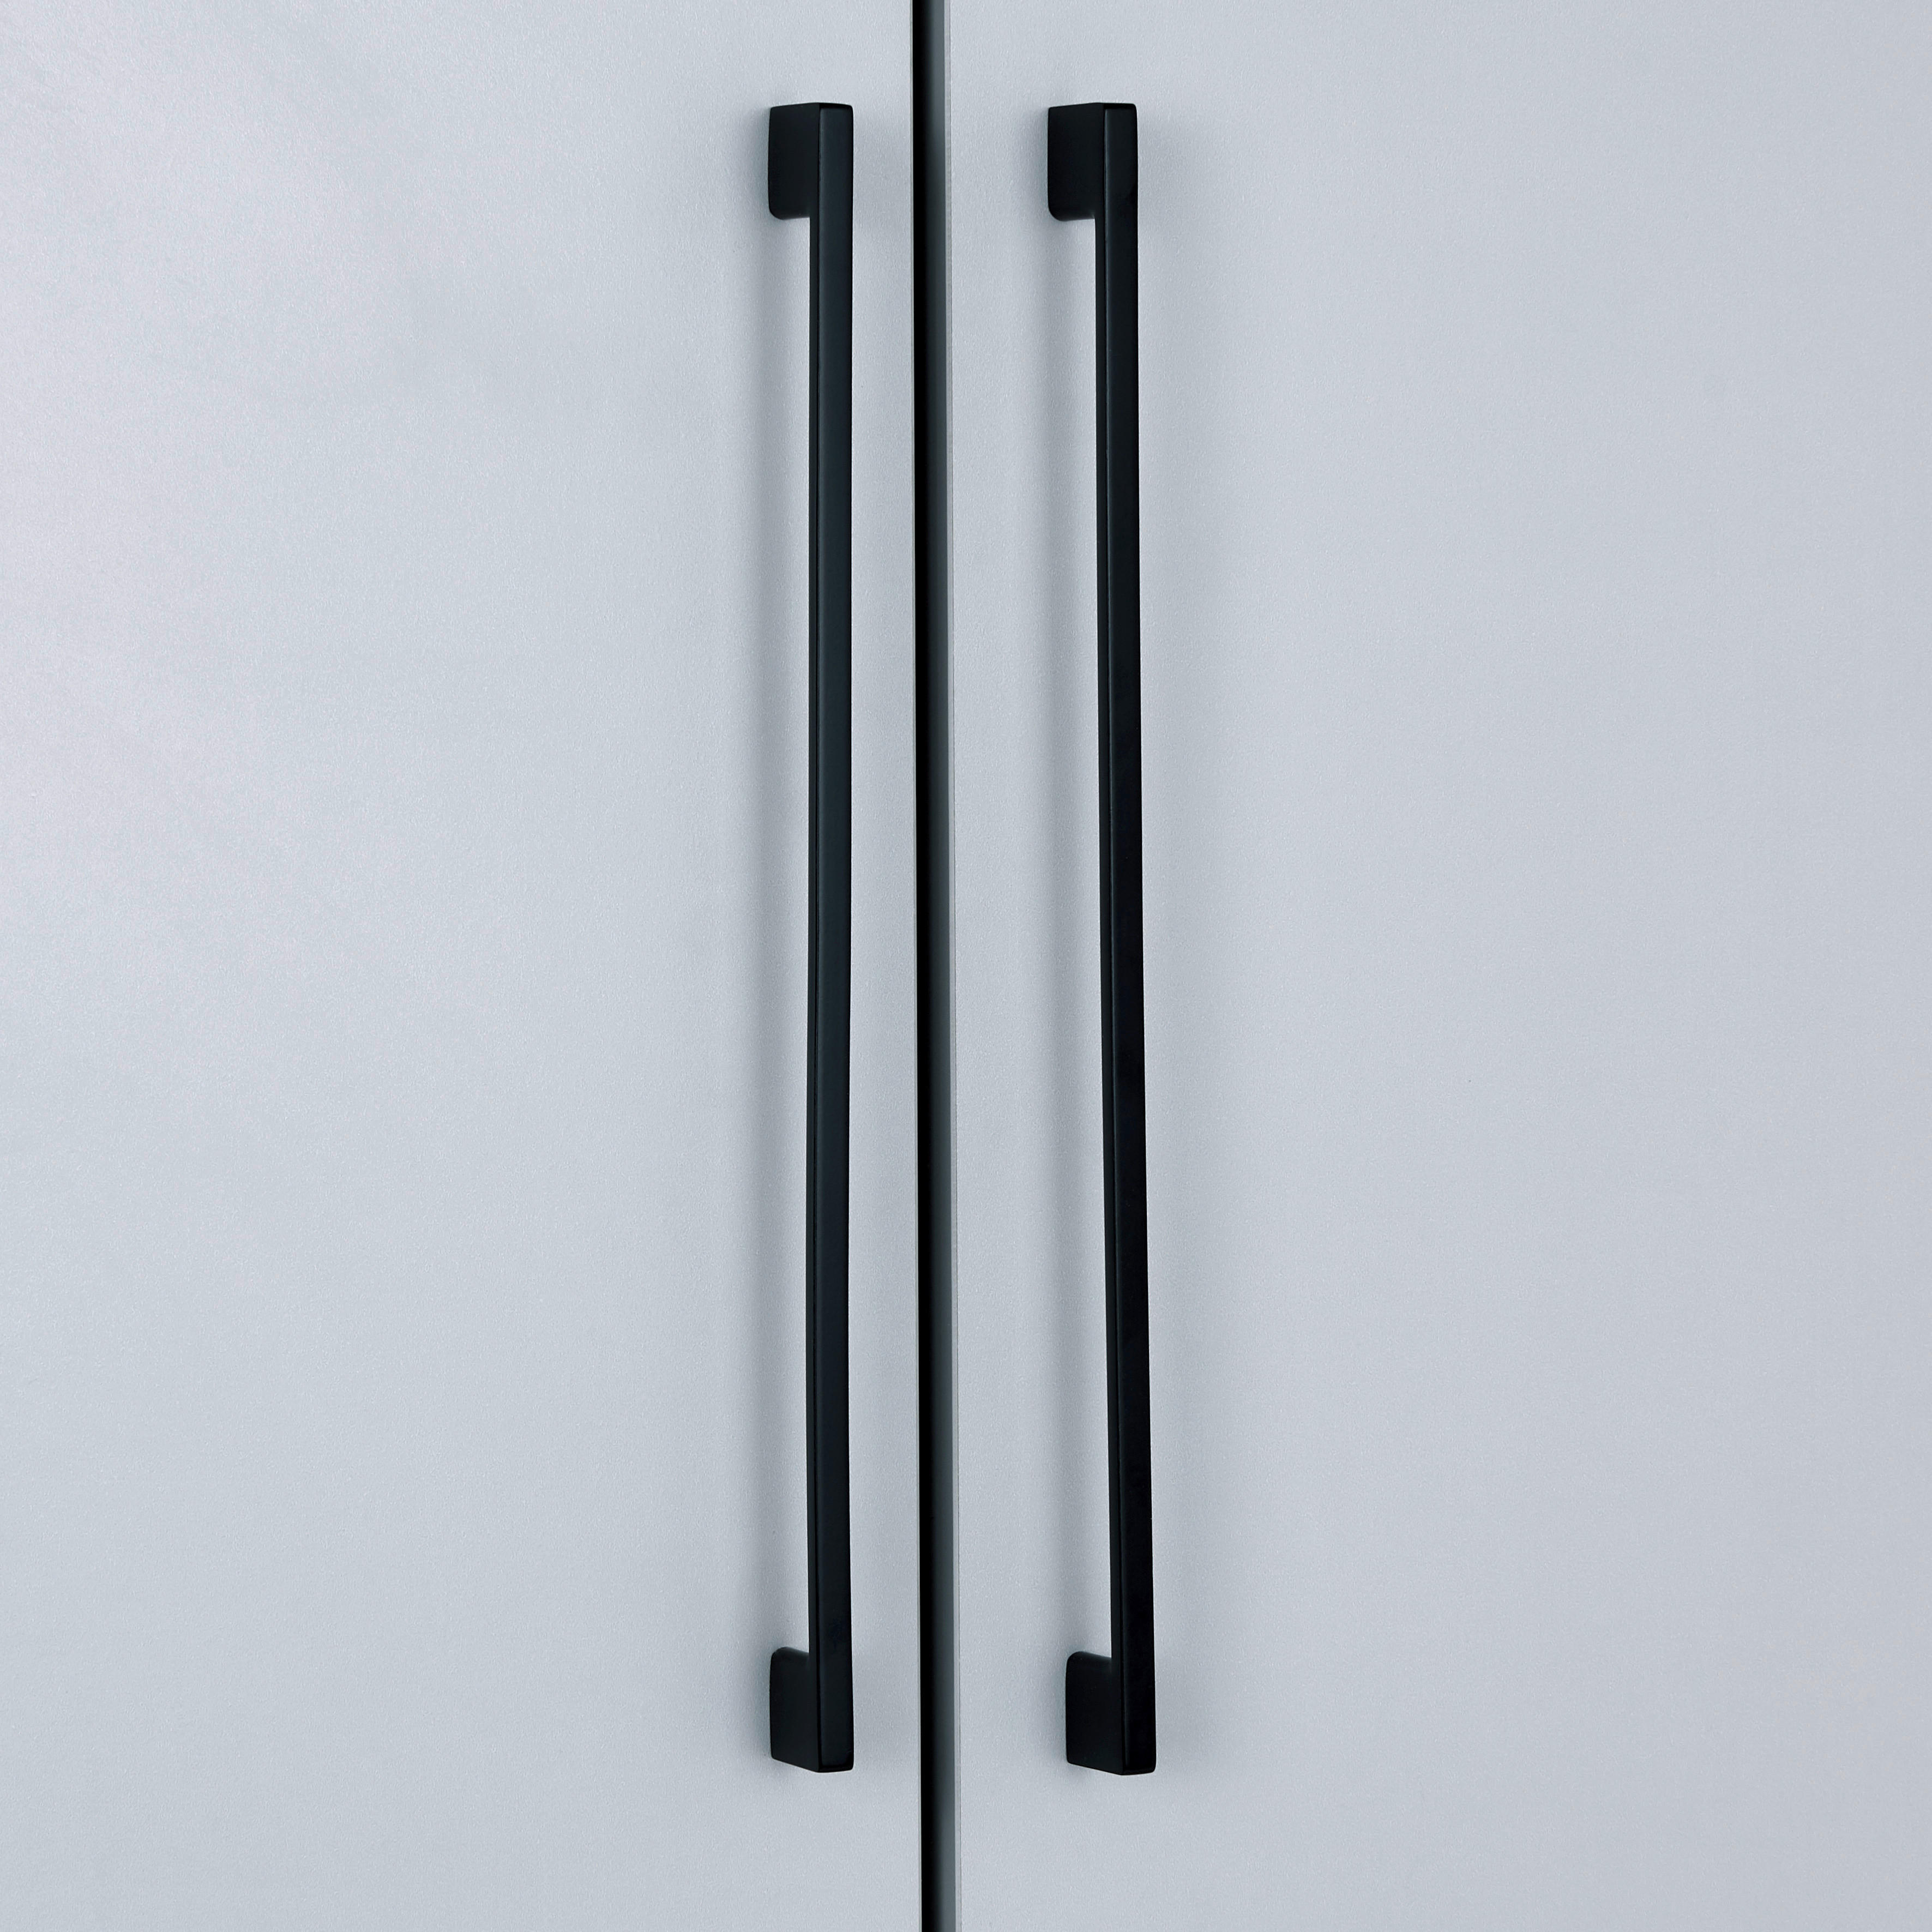 RUČKICA crna   2,8/35,2/0,6 cm    - crna, metal (2,8/35,2/0,6cm) - Hom`in